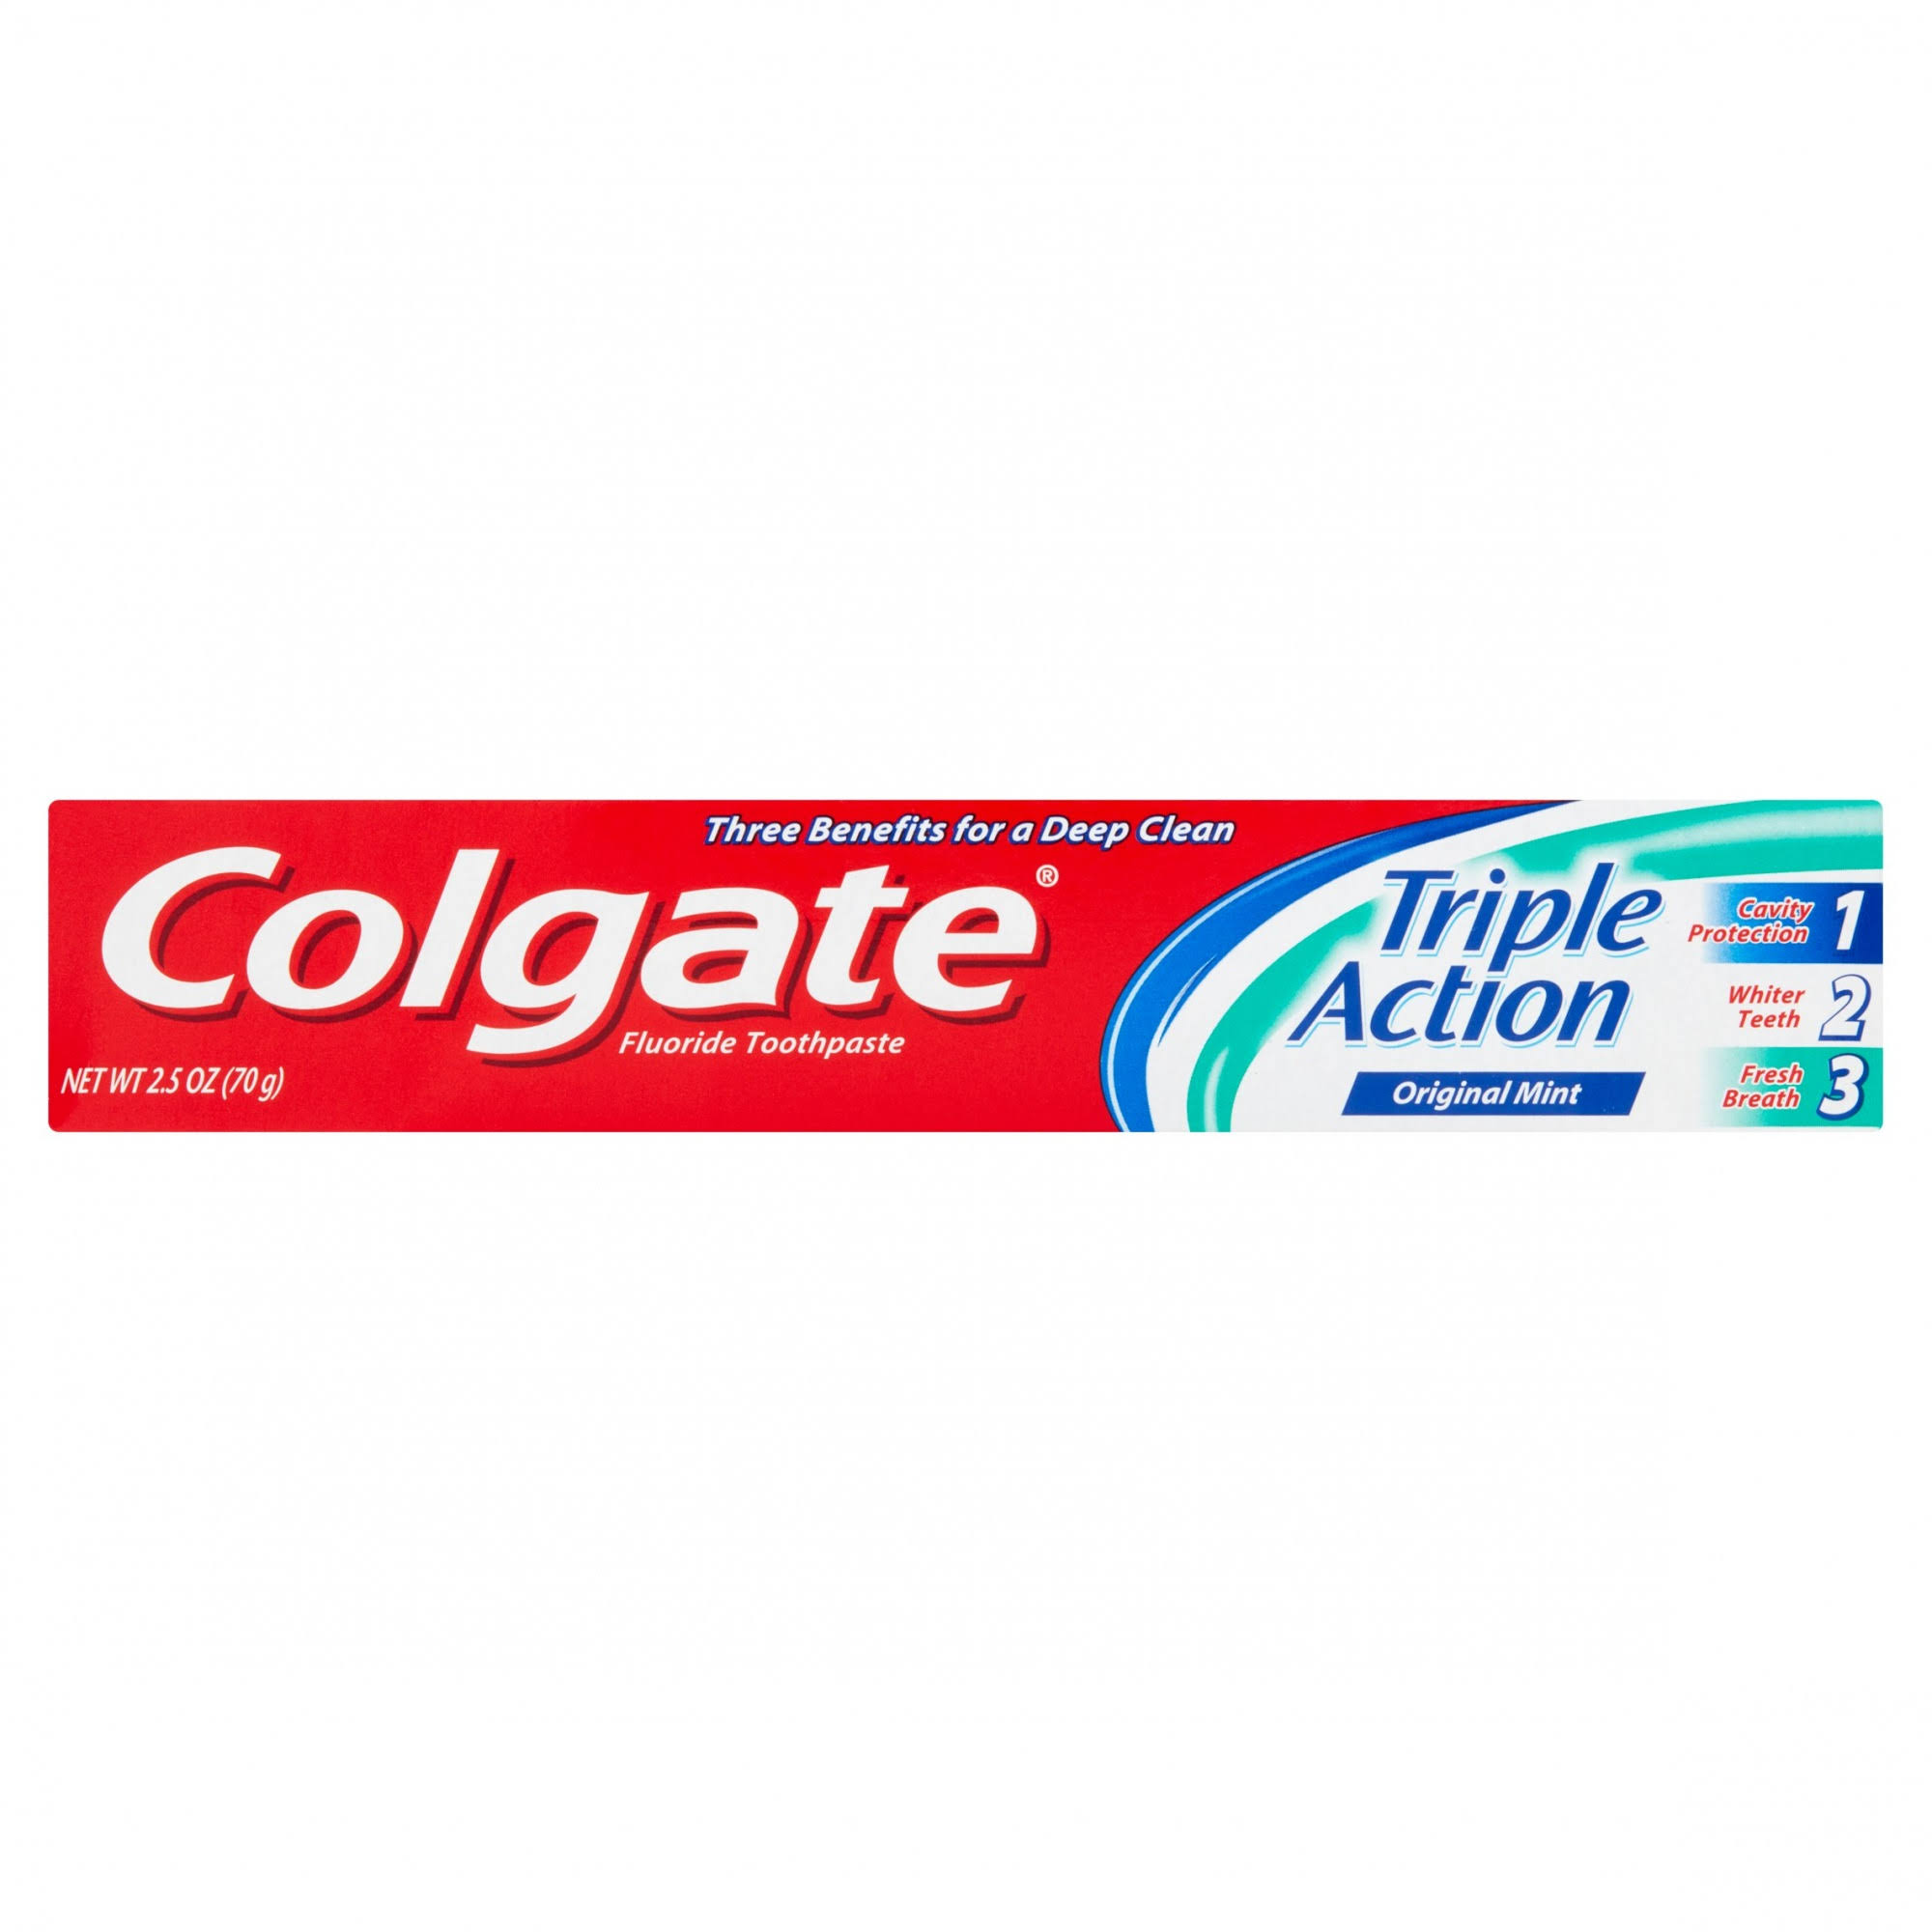 Colgate Triple Action Flouride Toothpaste - 2.5oz, Original Mint